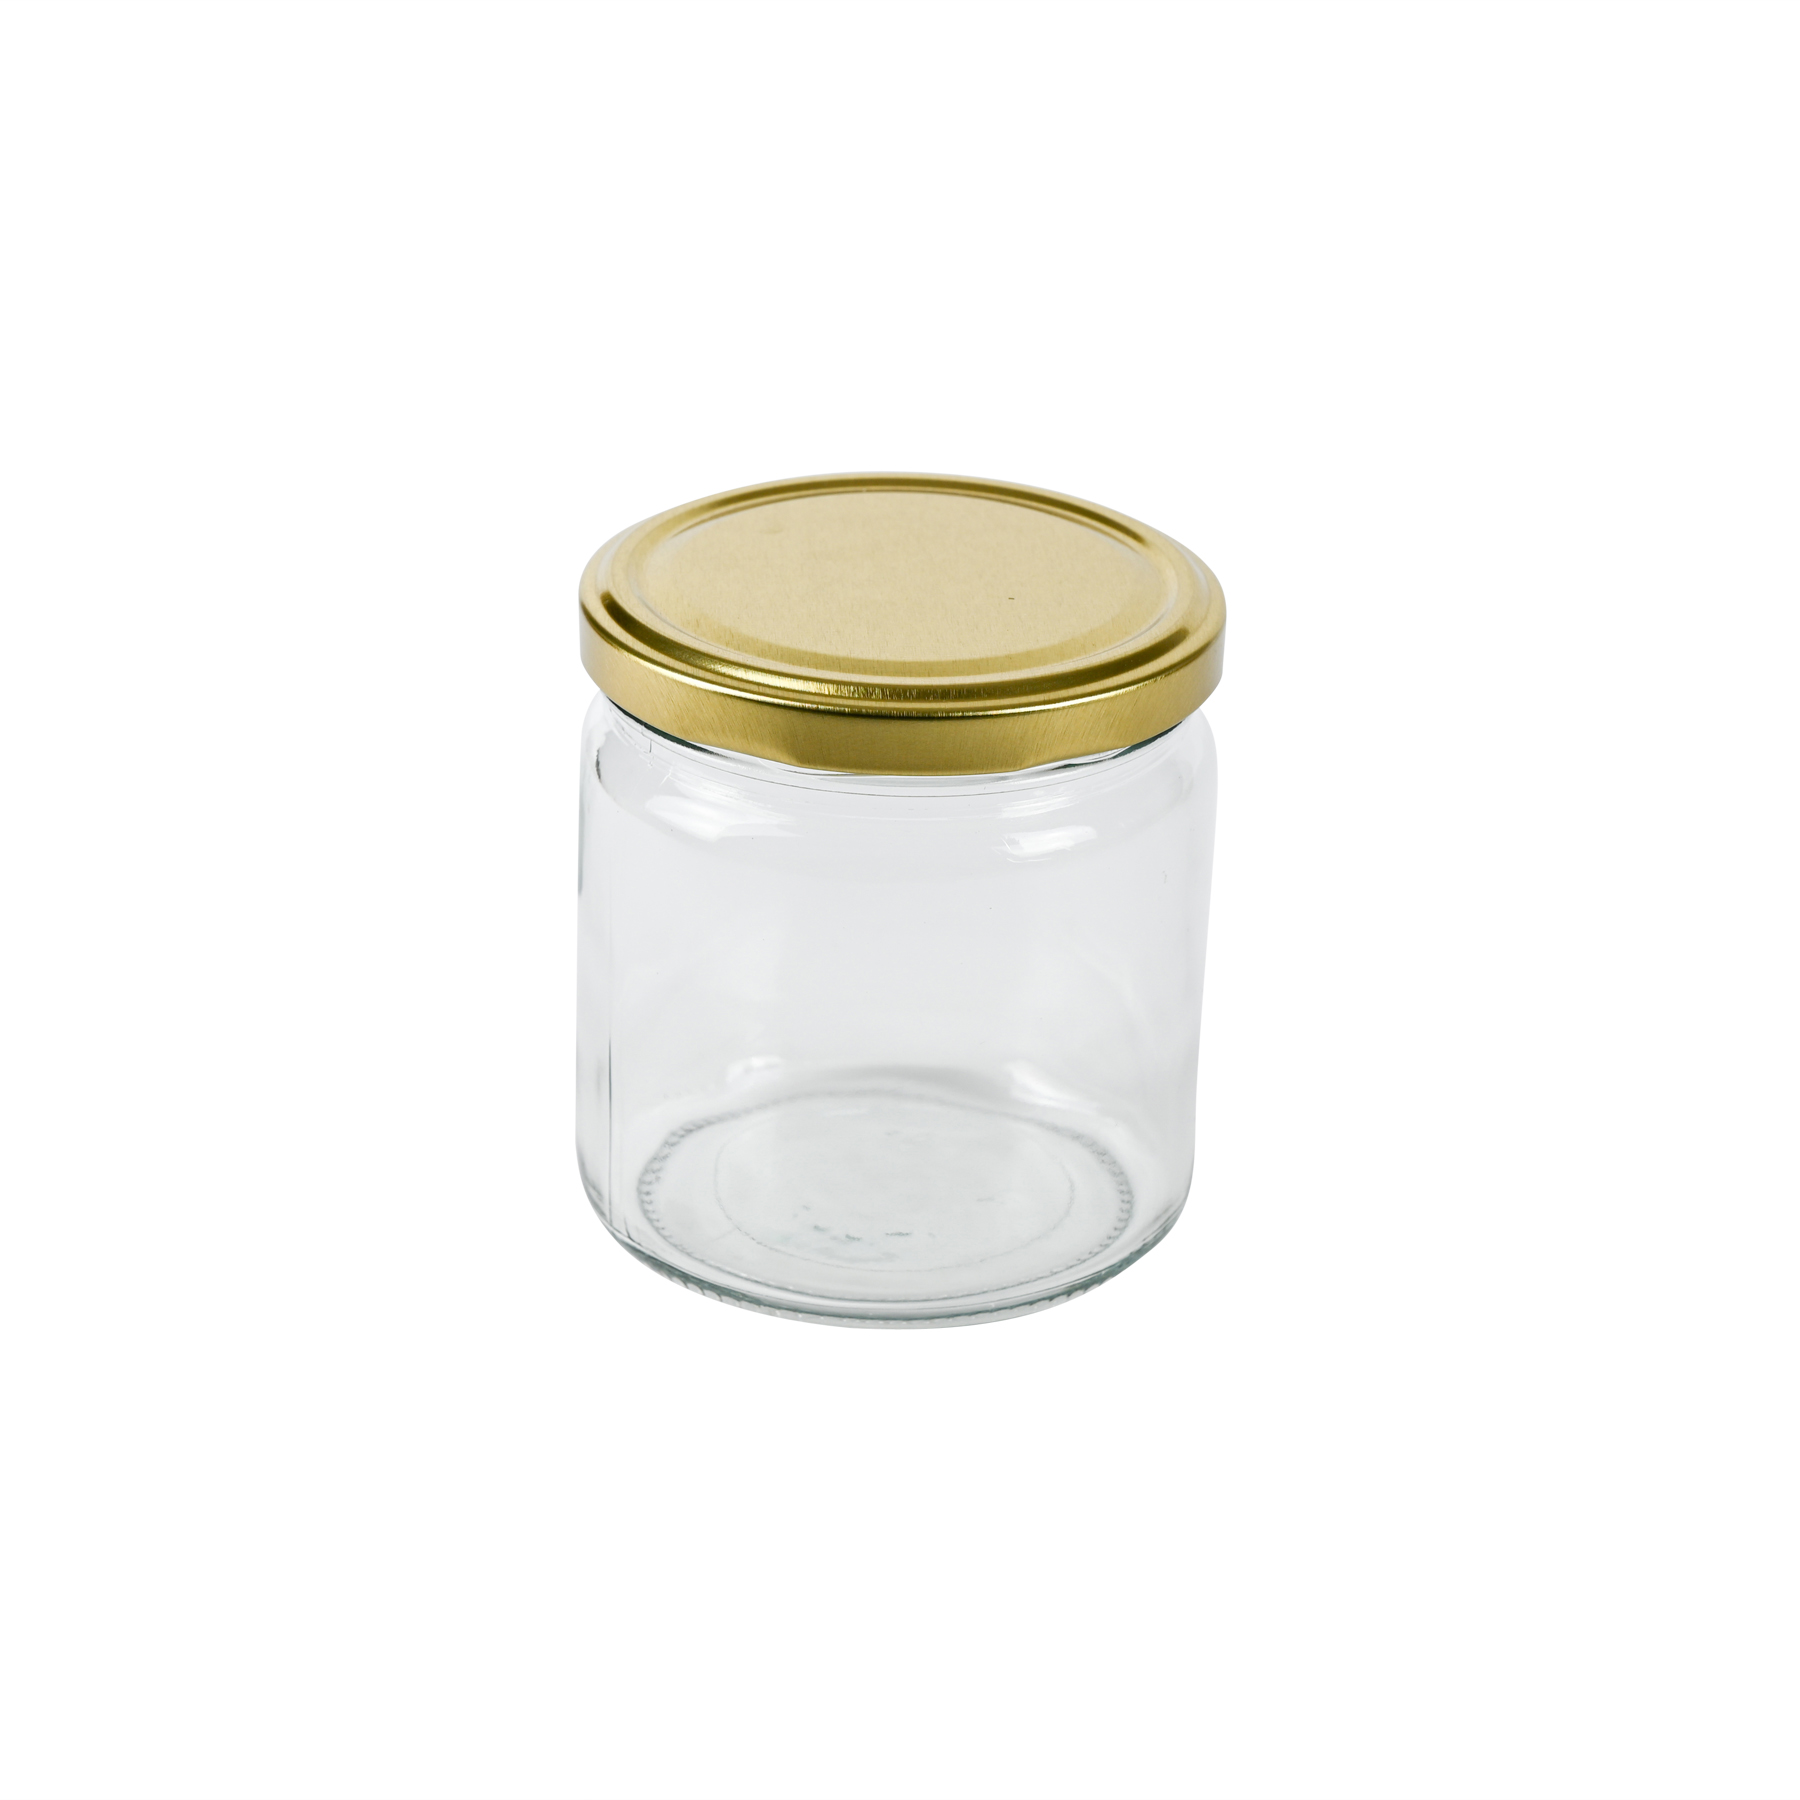 Rundglas 500 g TO mit goldenem twist off Deckel  1 Palette= 1936 St. lose FREI HAUS Hersteller Wiegand Glas